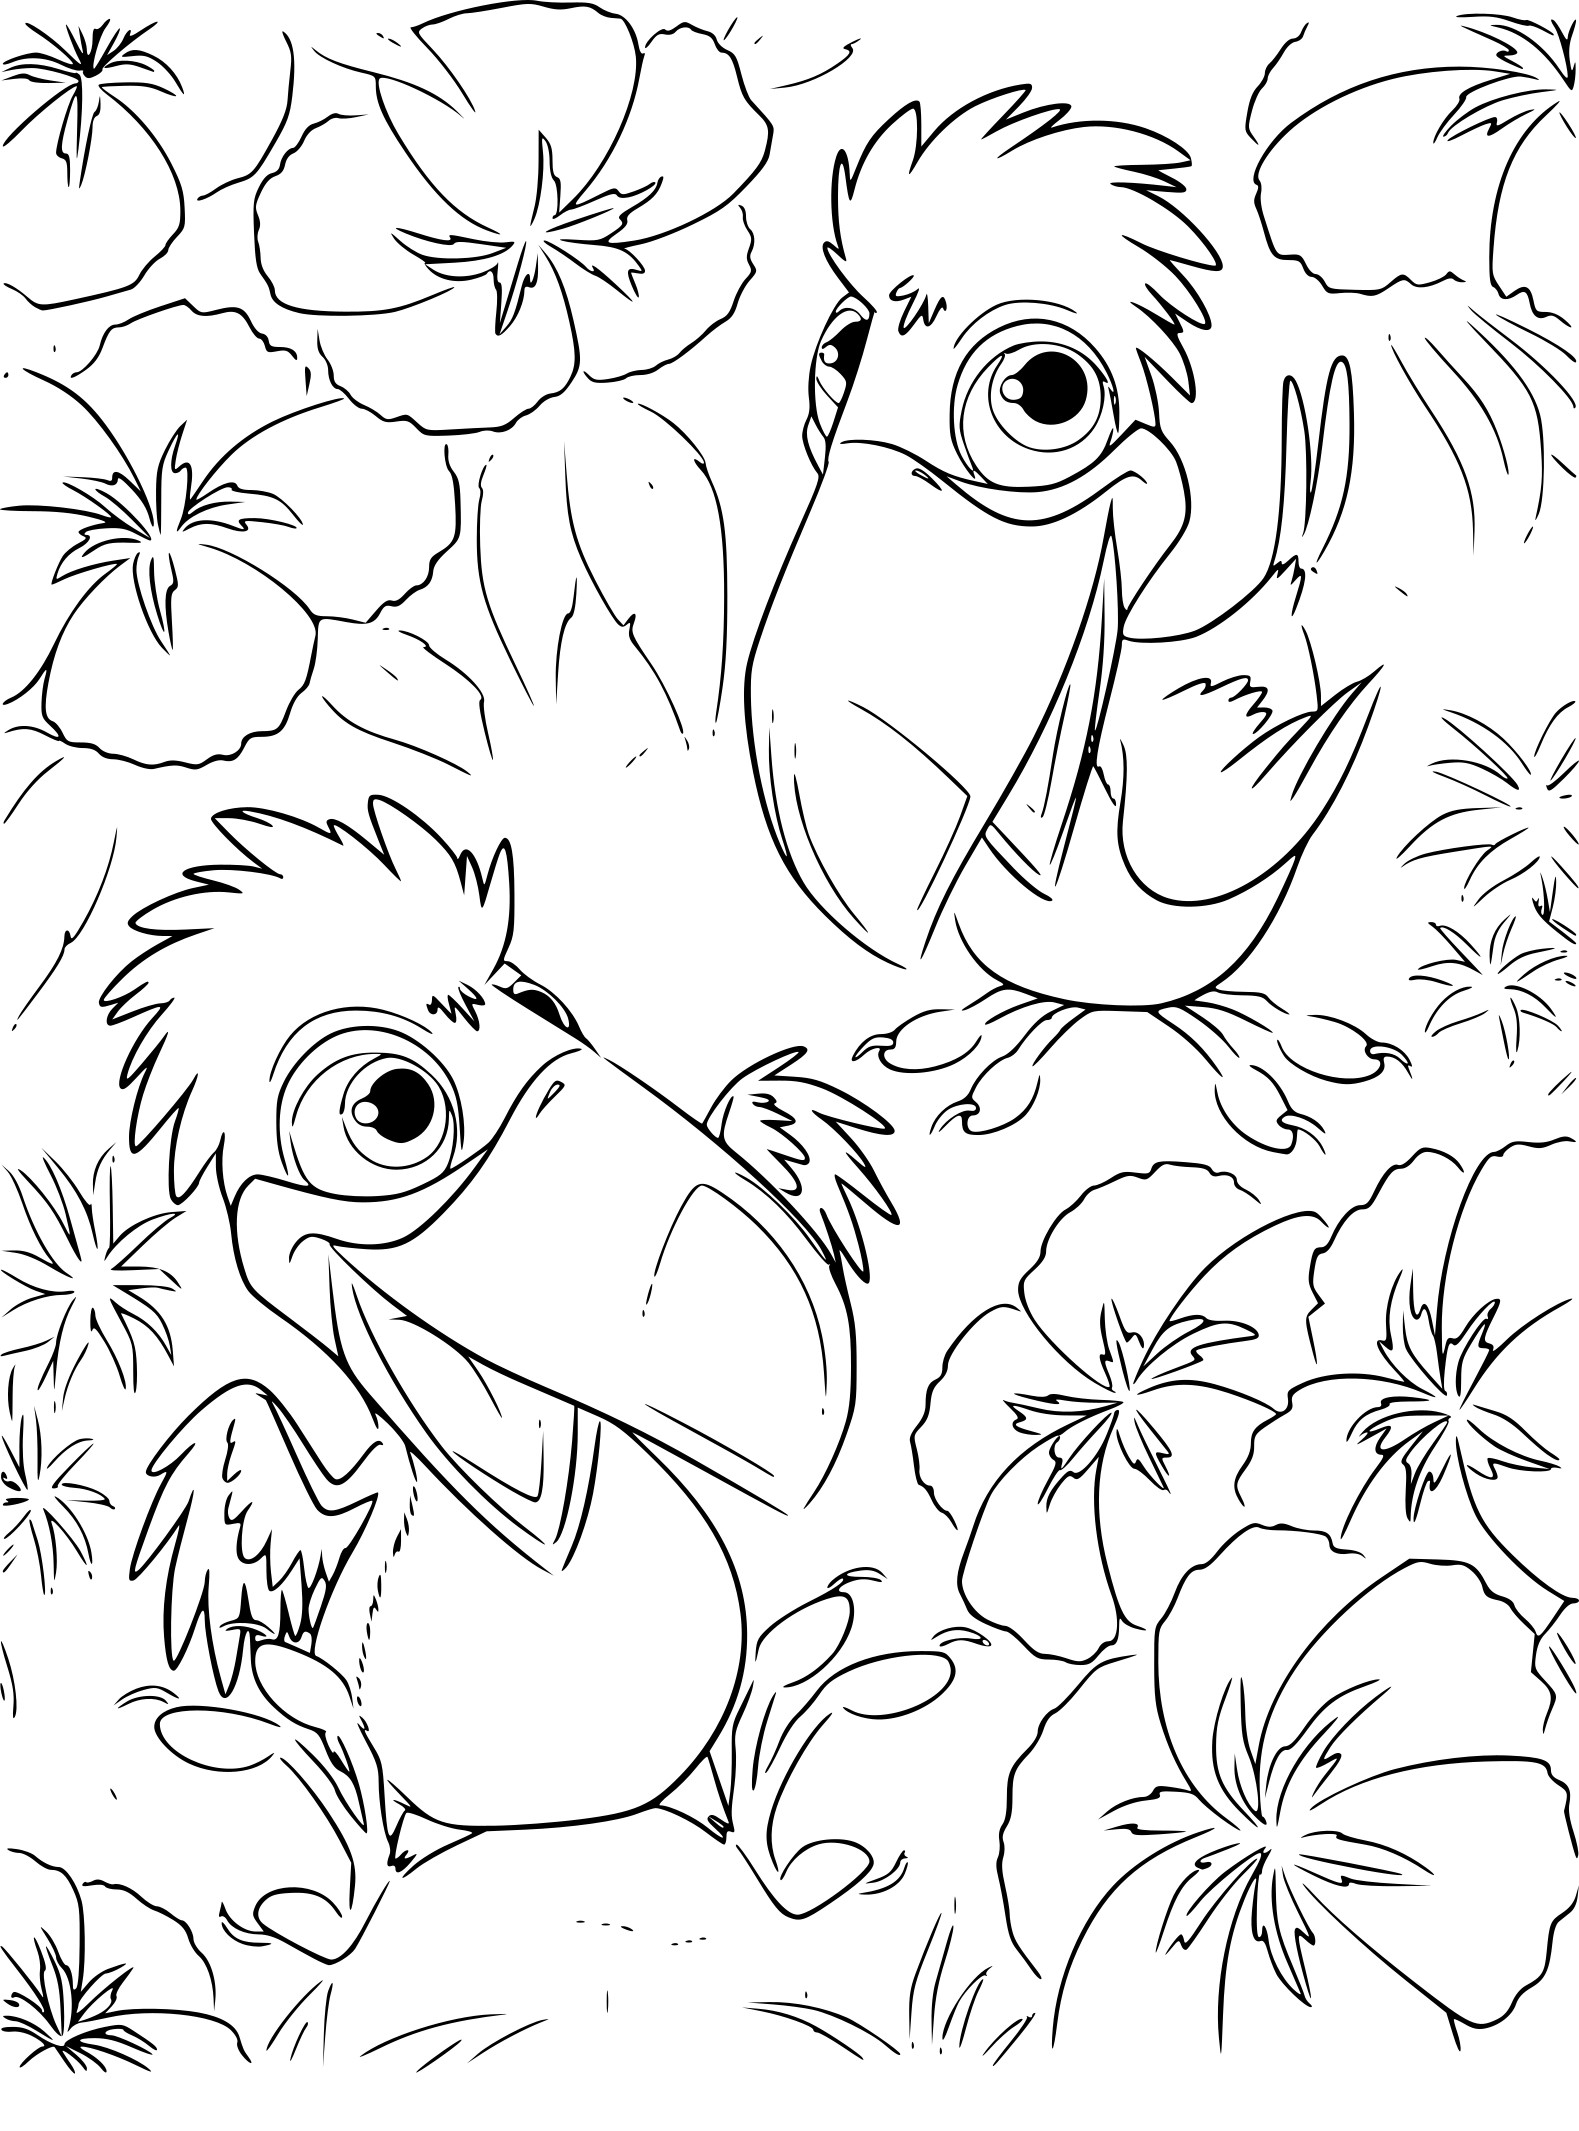 Rio Little Toucans coloring page